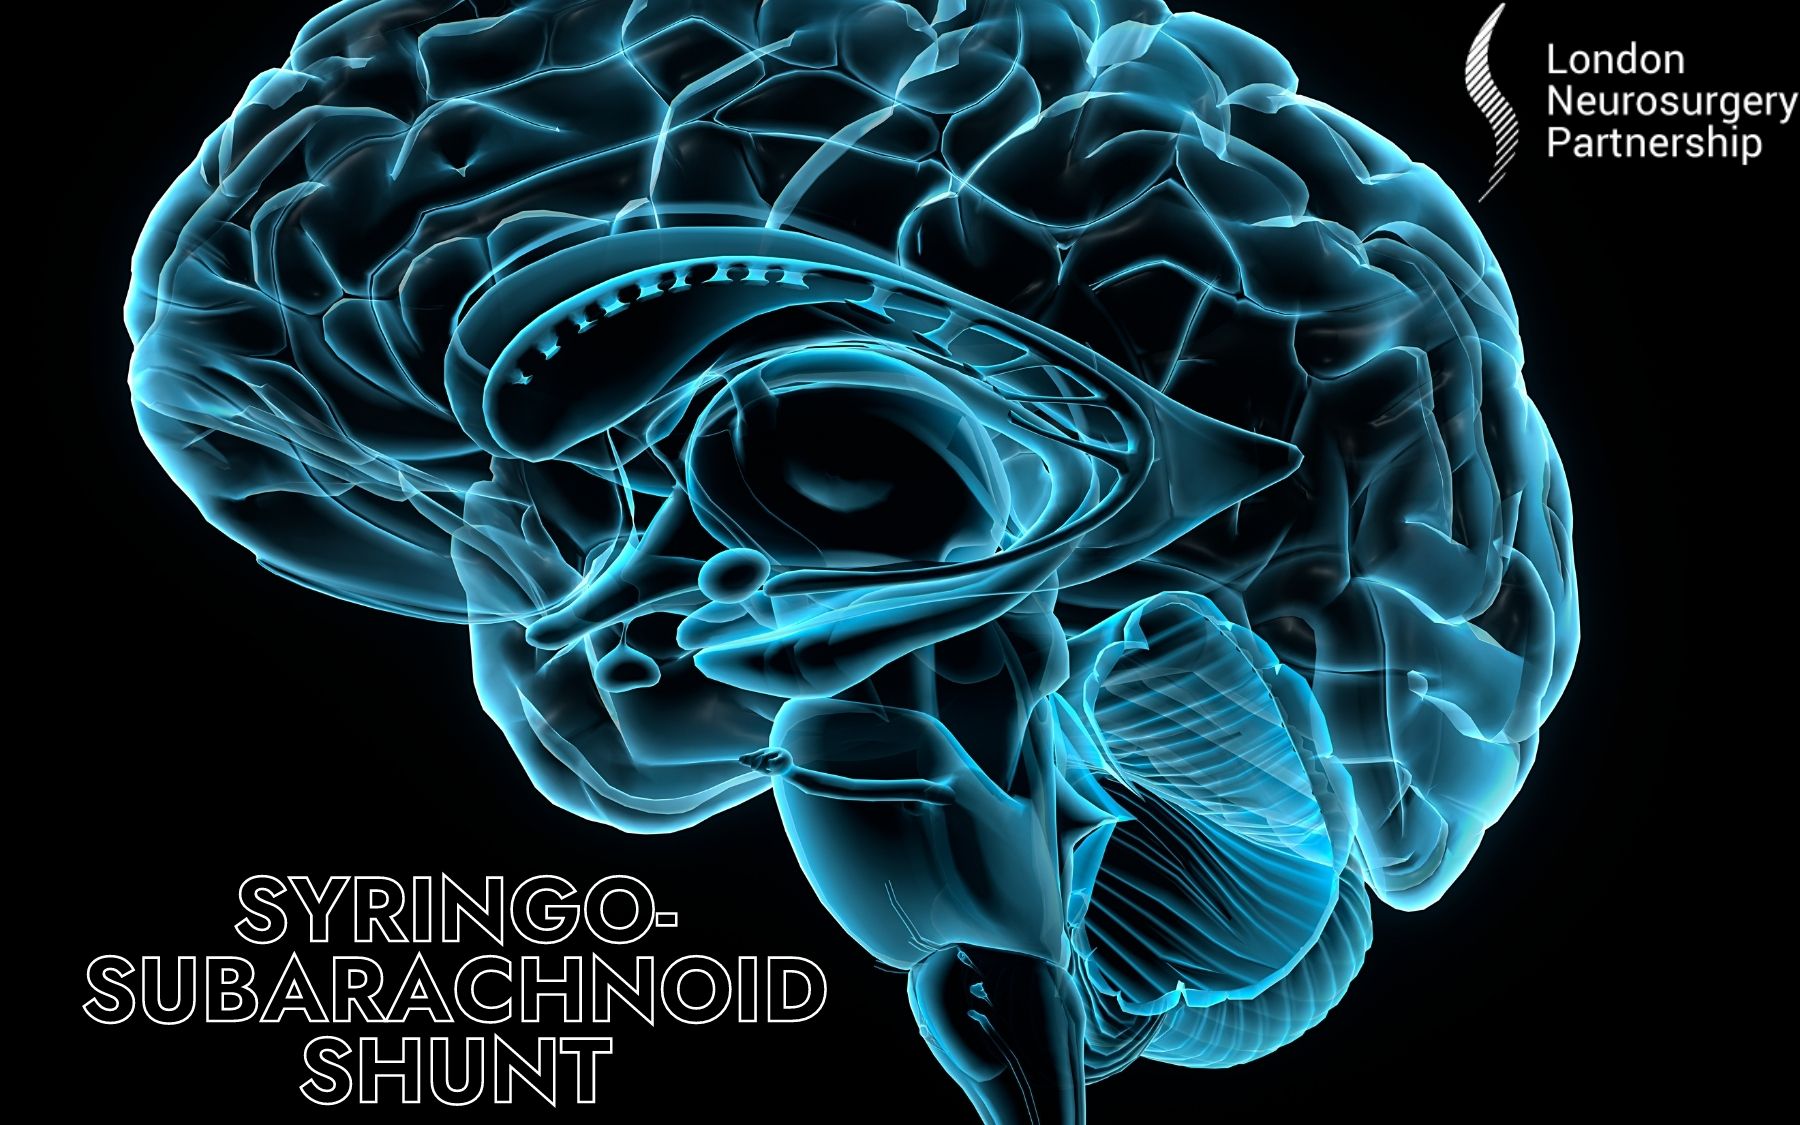 Syringosubarachnoid shunt - London Neurosurgery Partnership